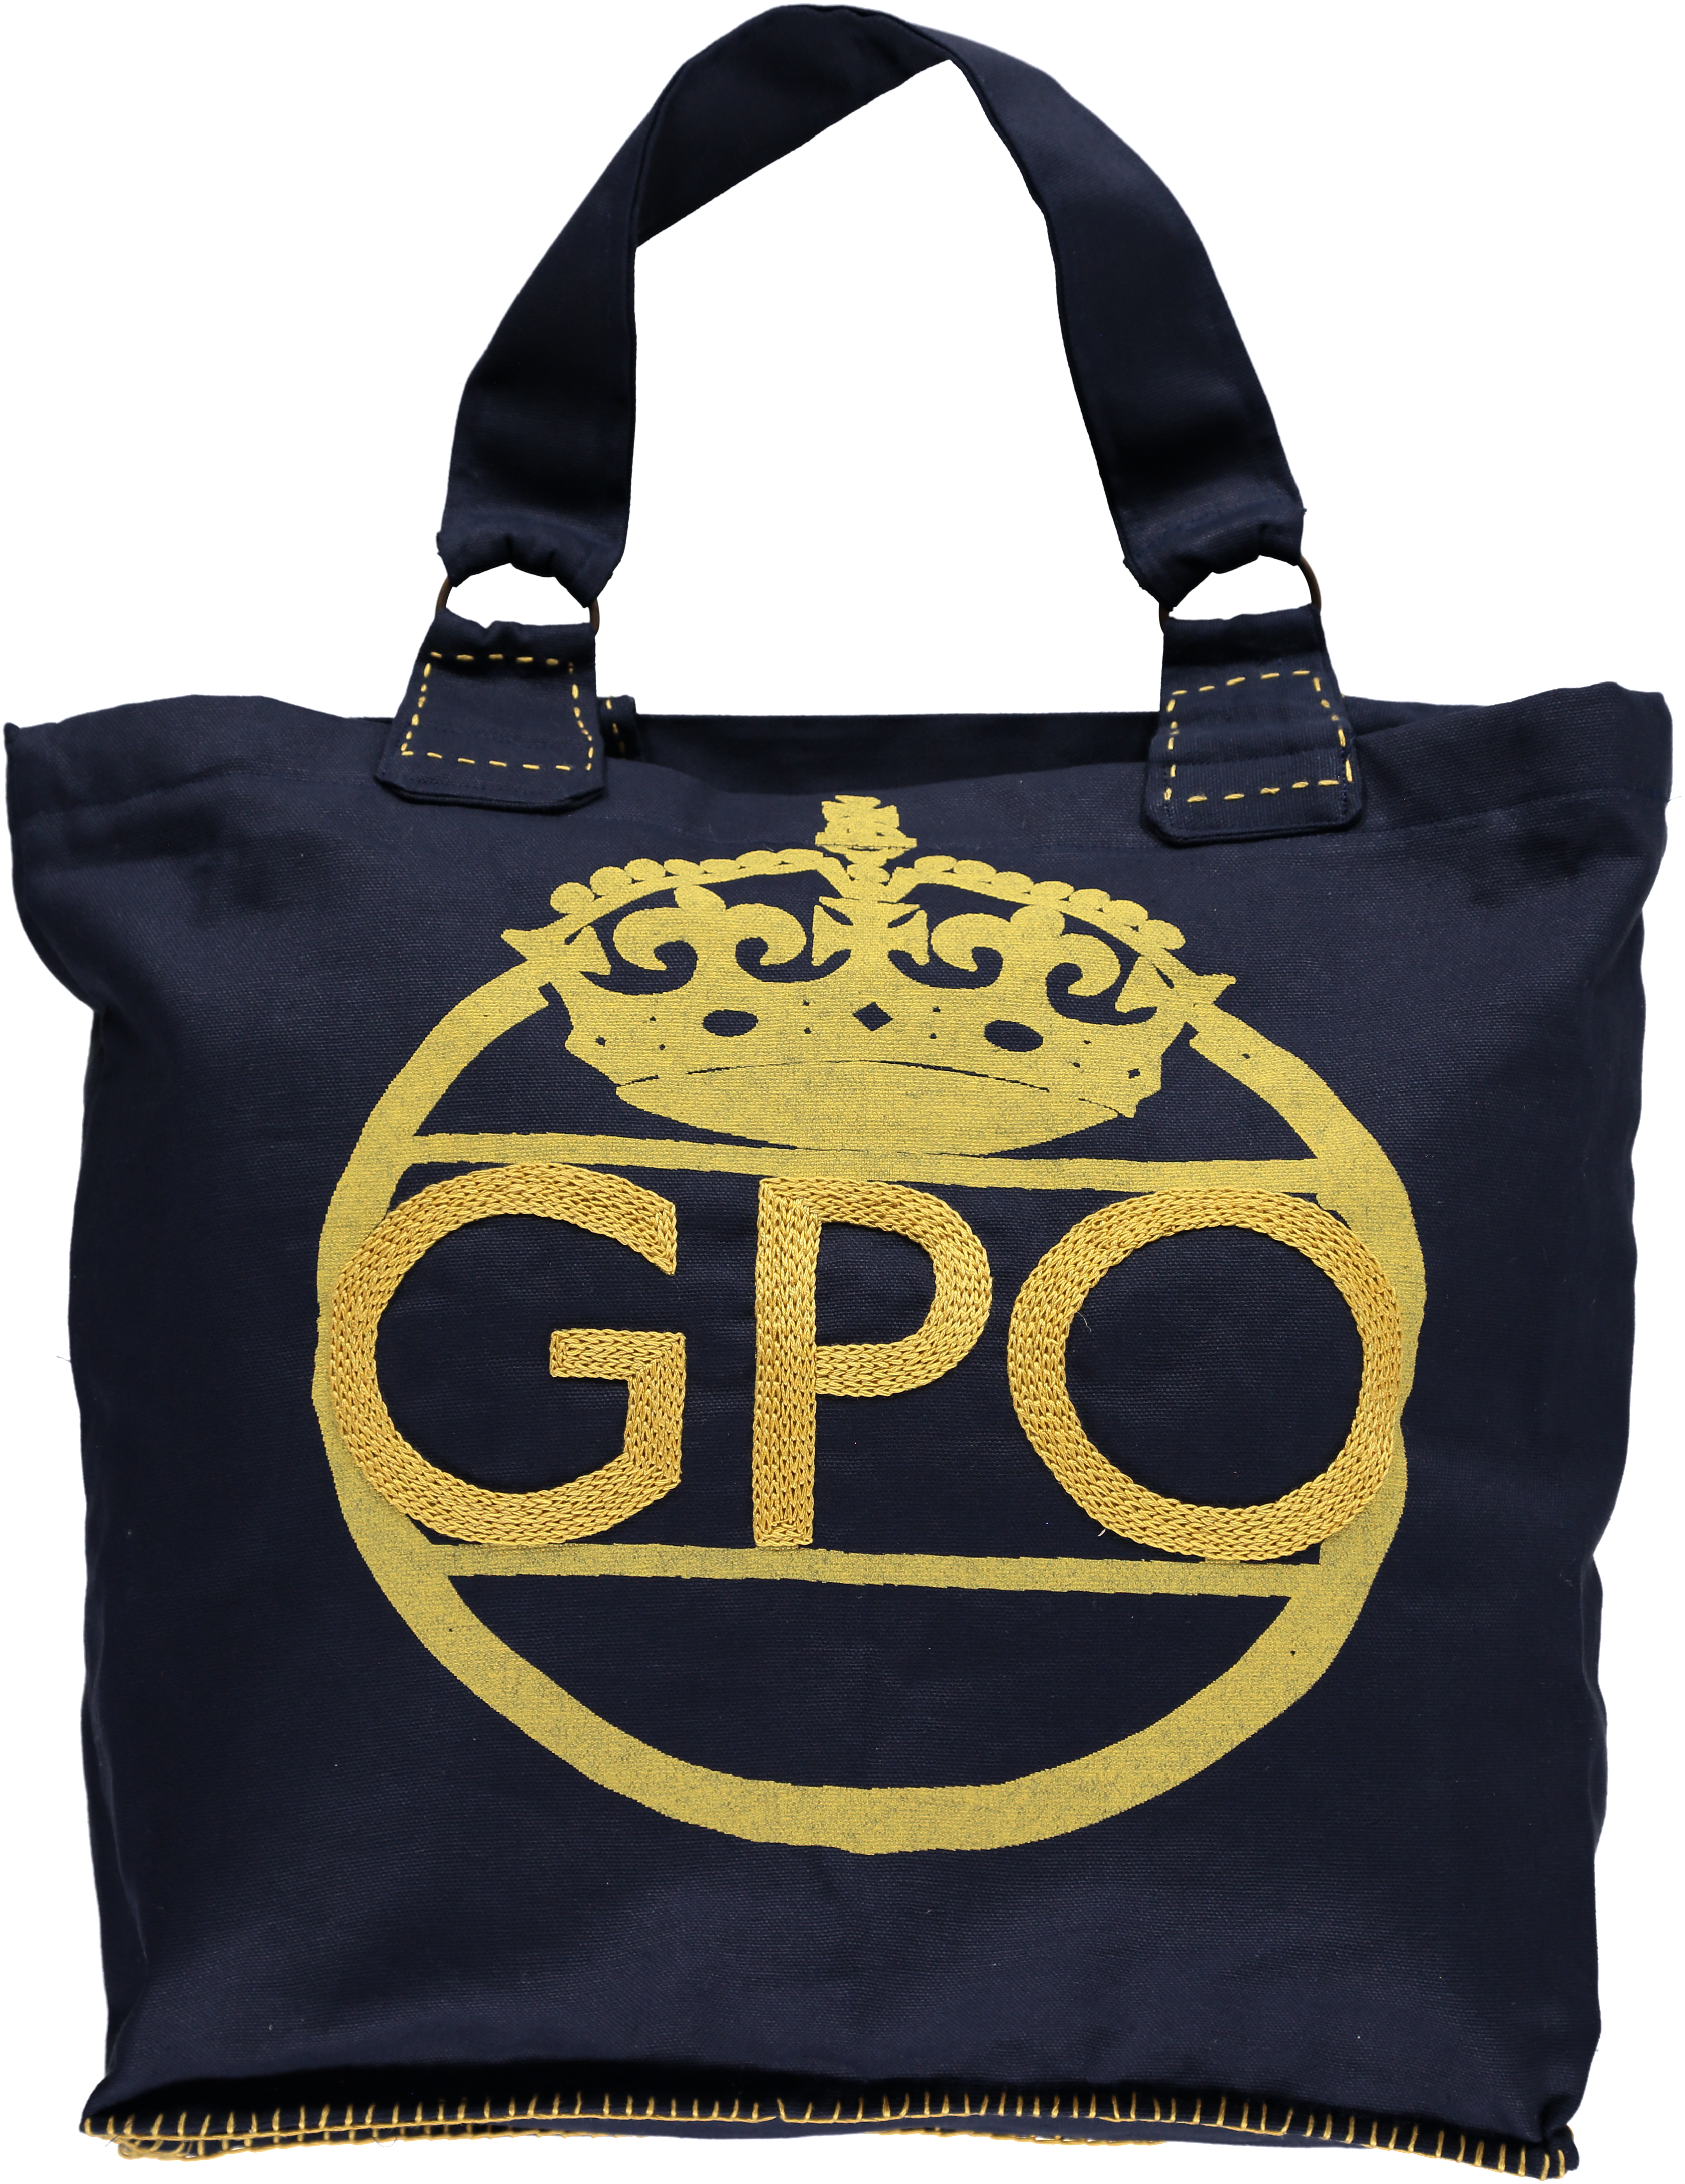 GPO Bag